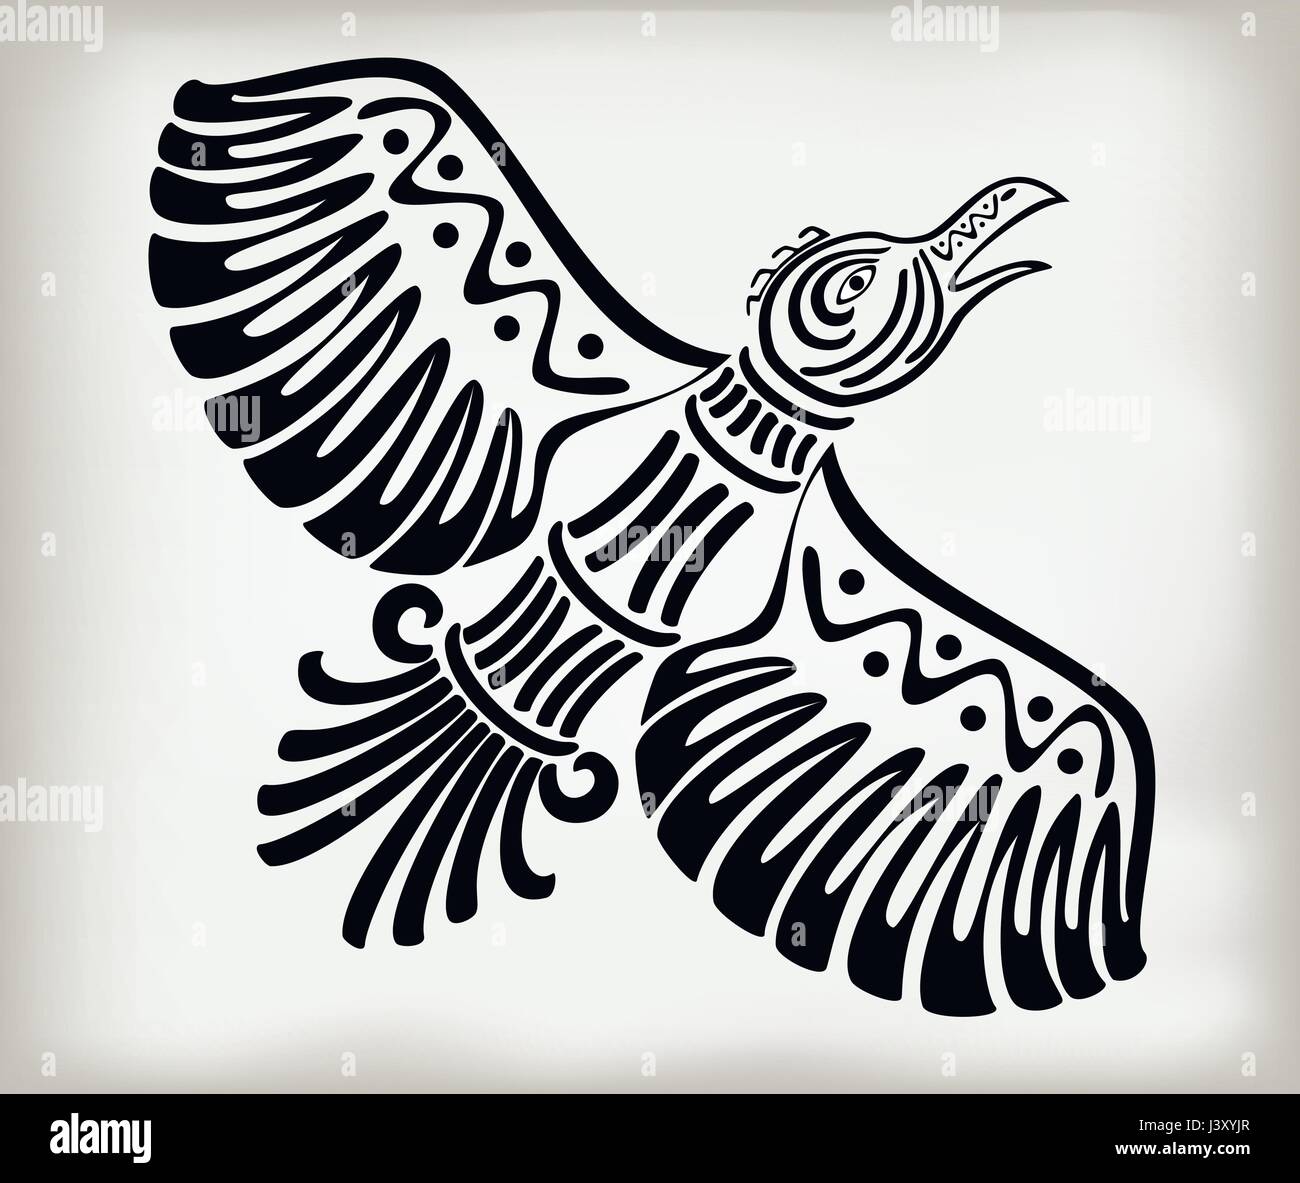 Oiseau stylisé décoratif crows dans le style de l'ancienne ethniques indiens américains avec la tendance nationale. EPS10 vector illustration Illustration de Vecteur